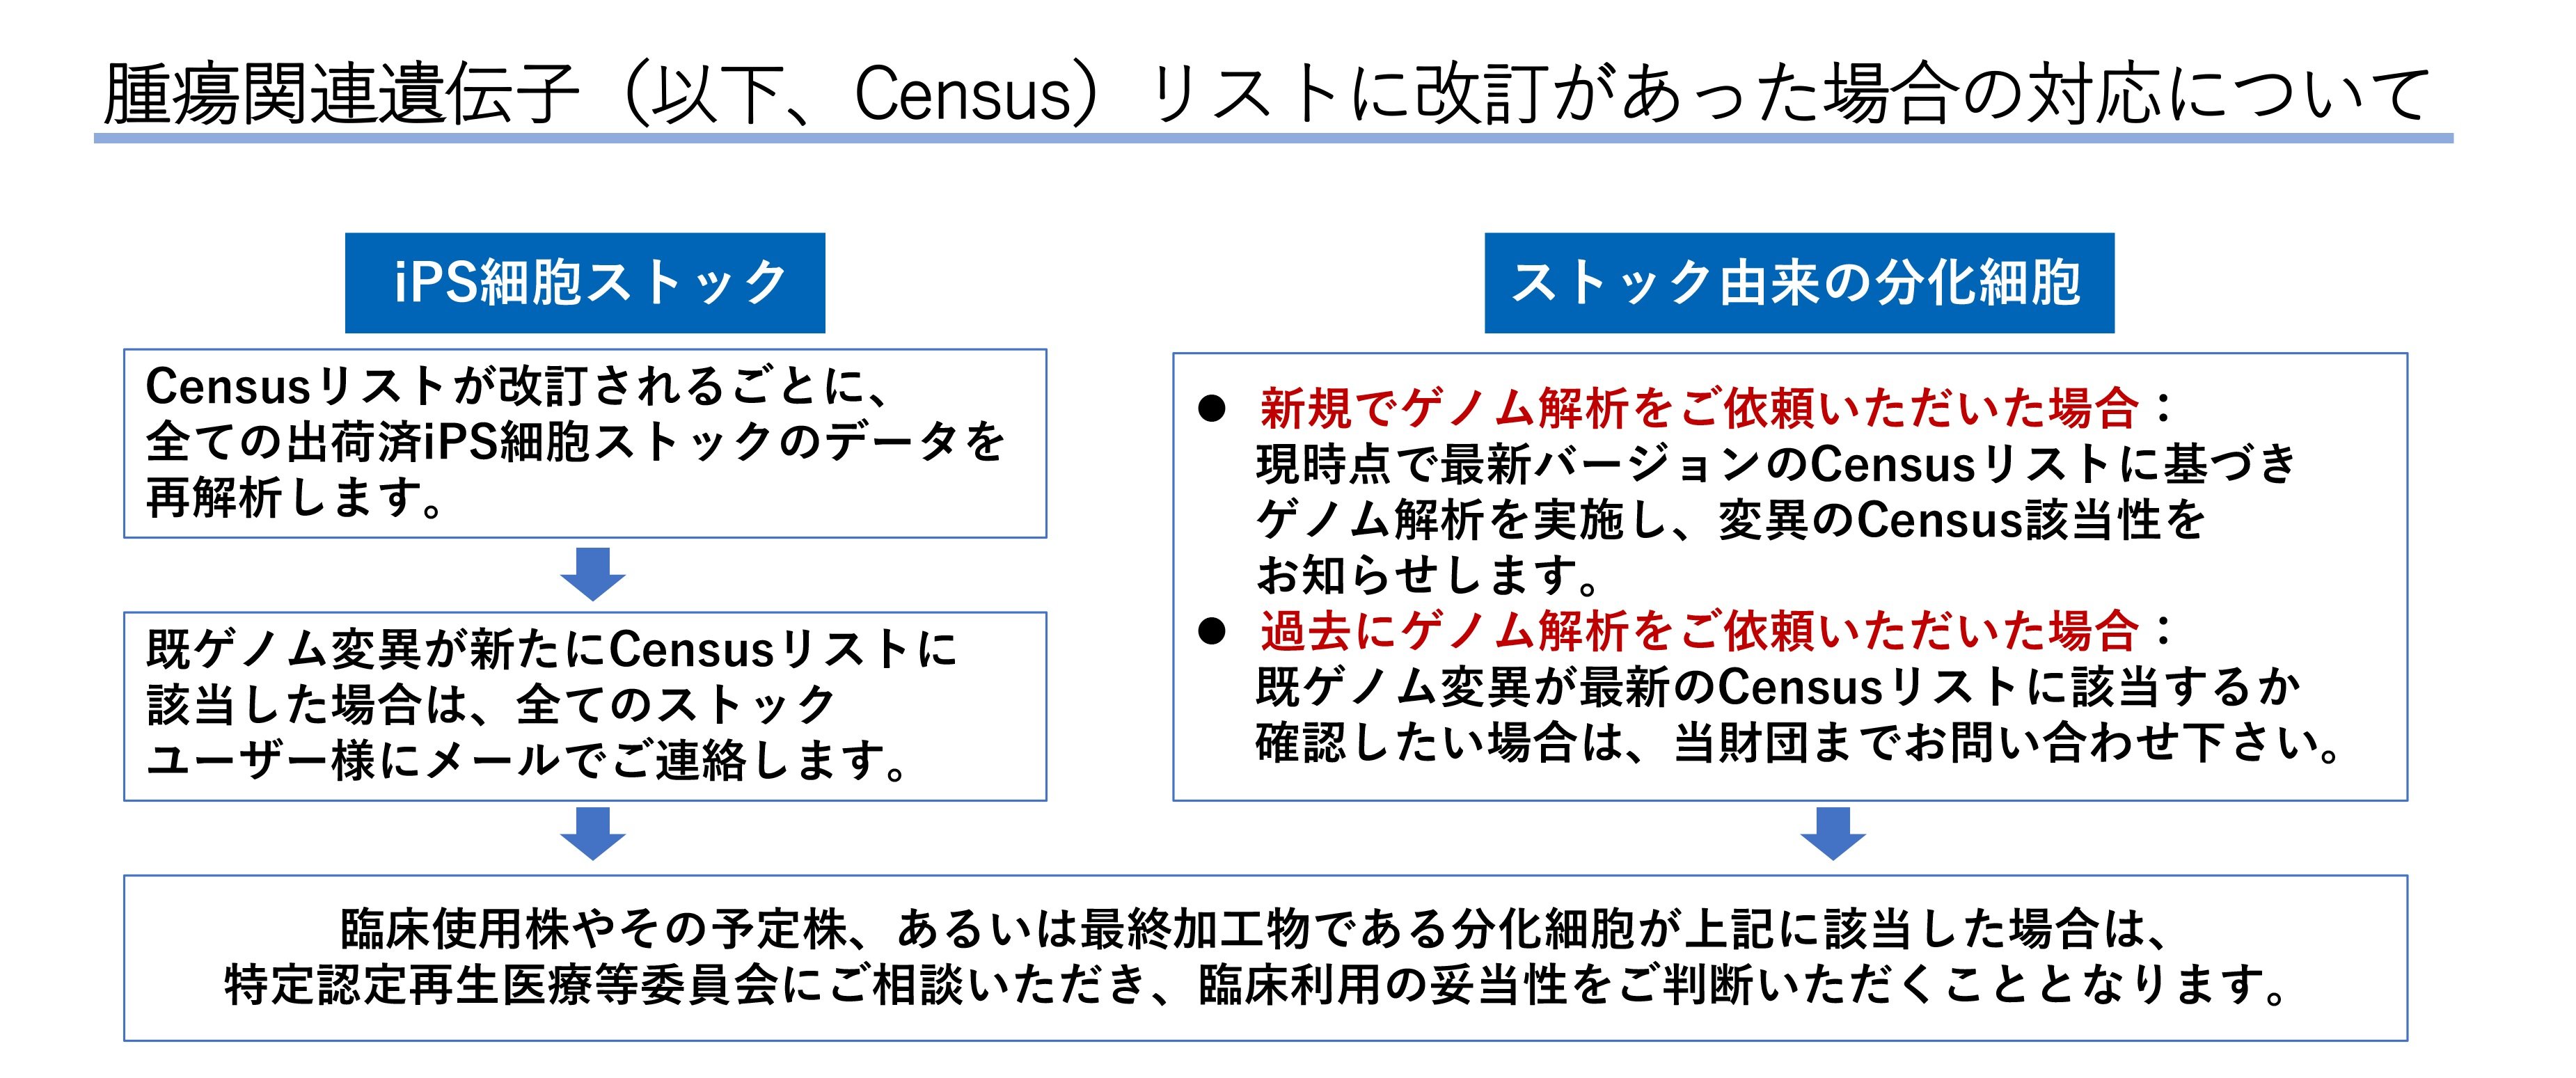 Census図